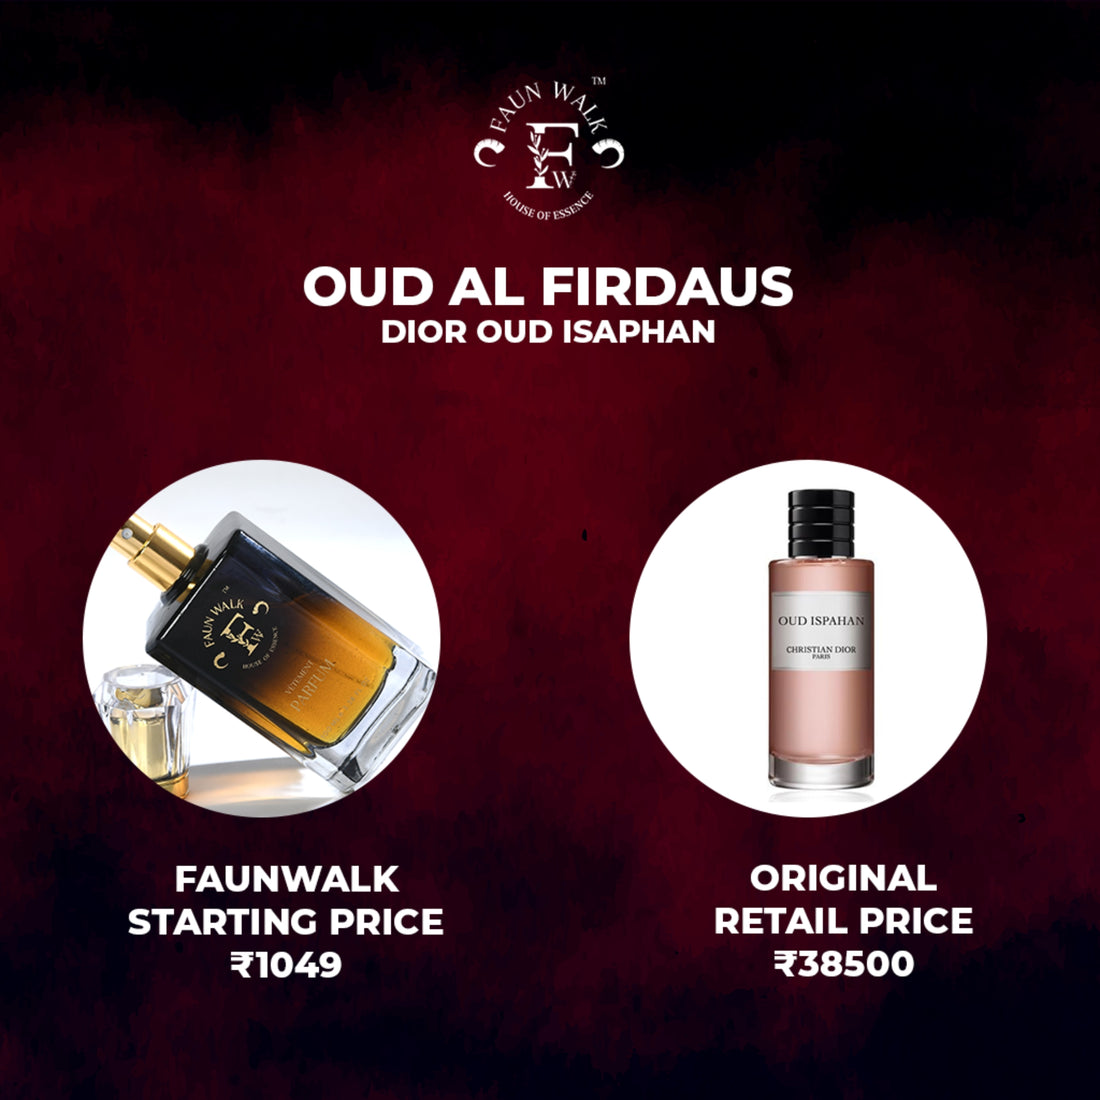 Oud Al Firdaus